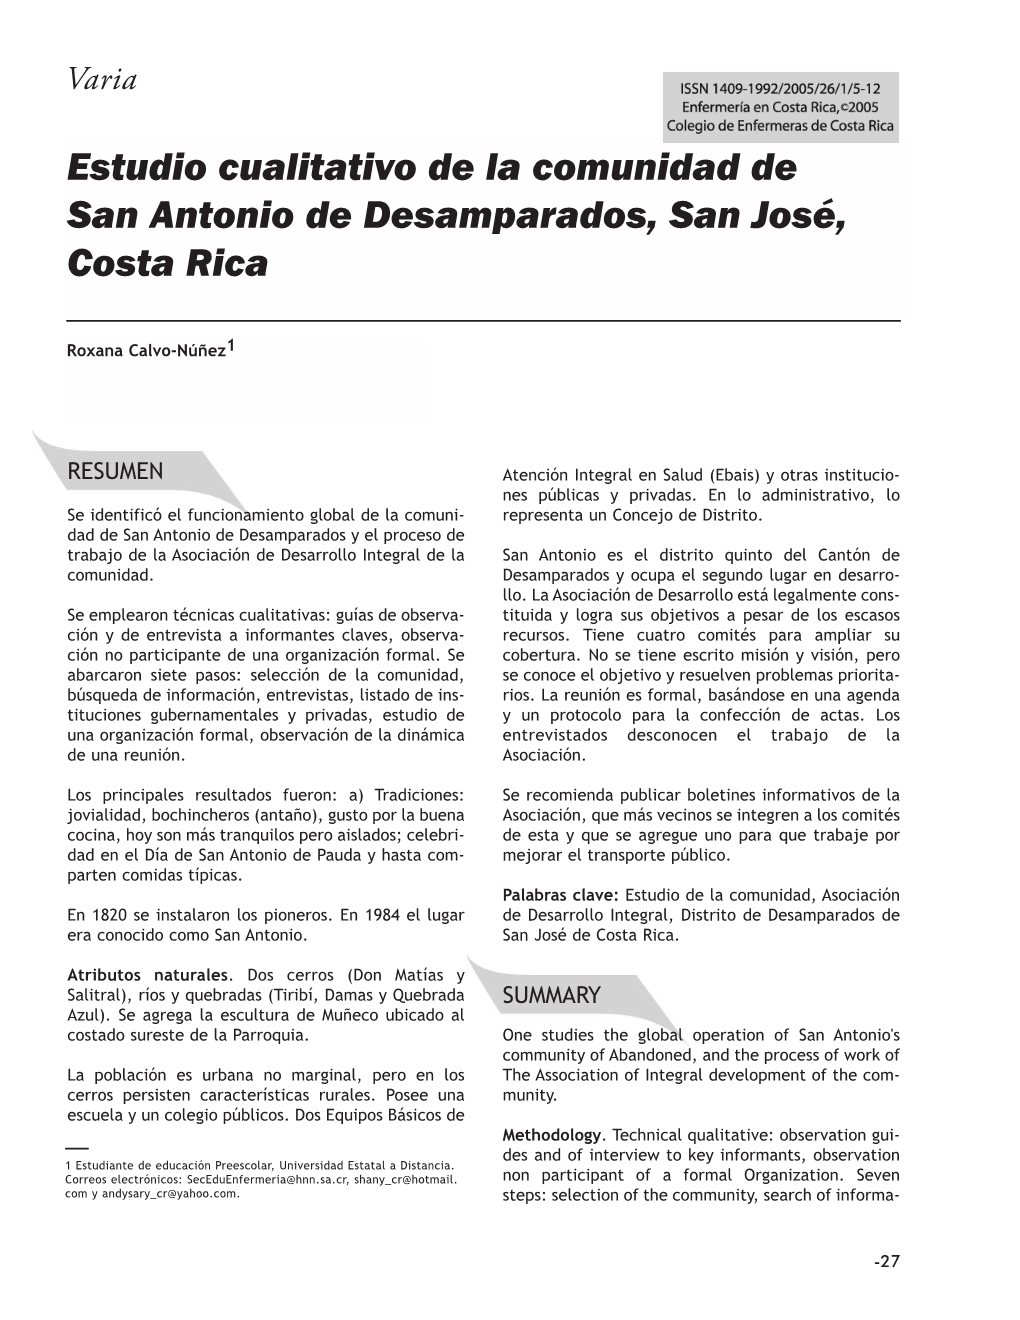 Estudio Cualitativo De La Comunidad De San Antonio De Desamparados, San José, Costa Rica